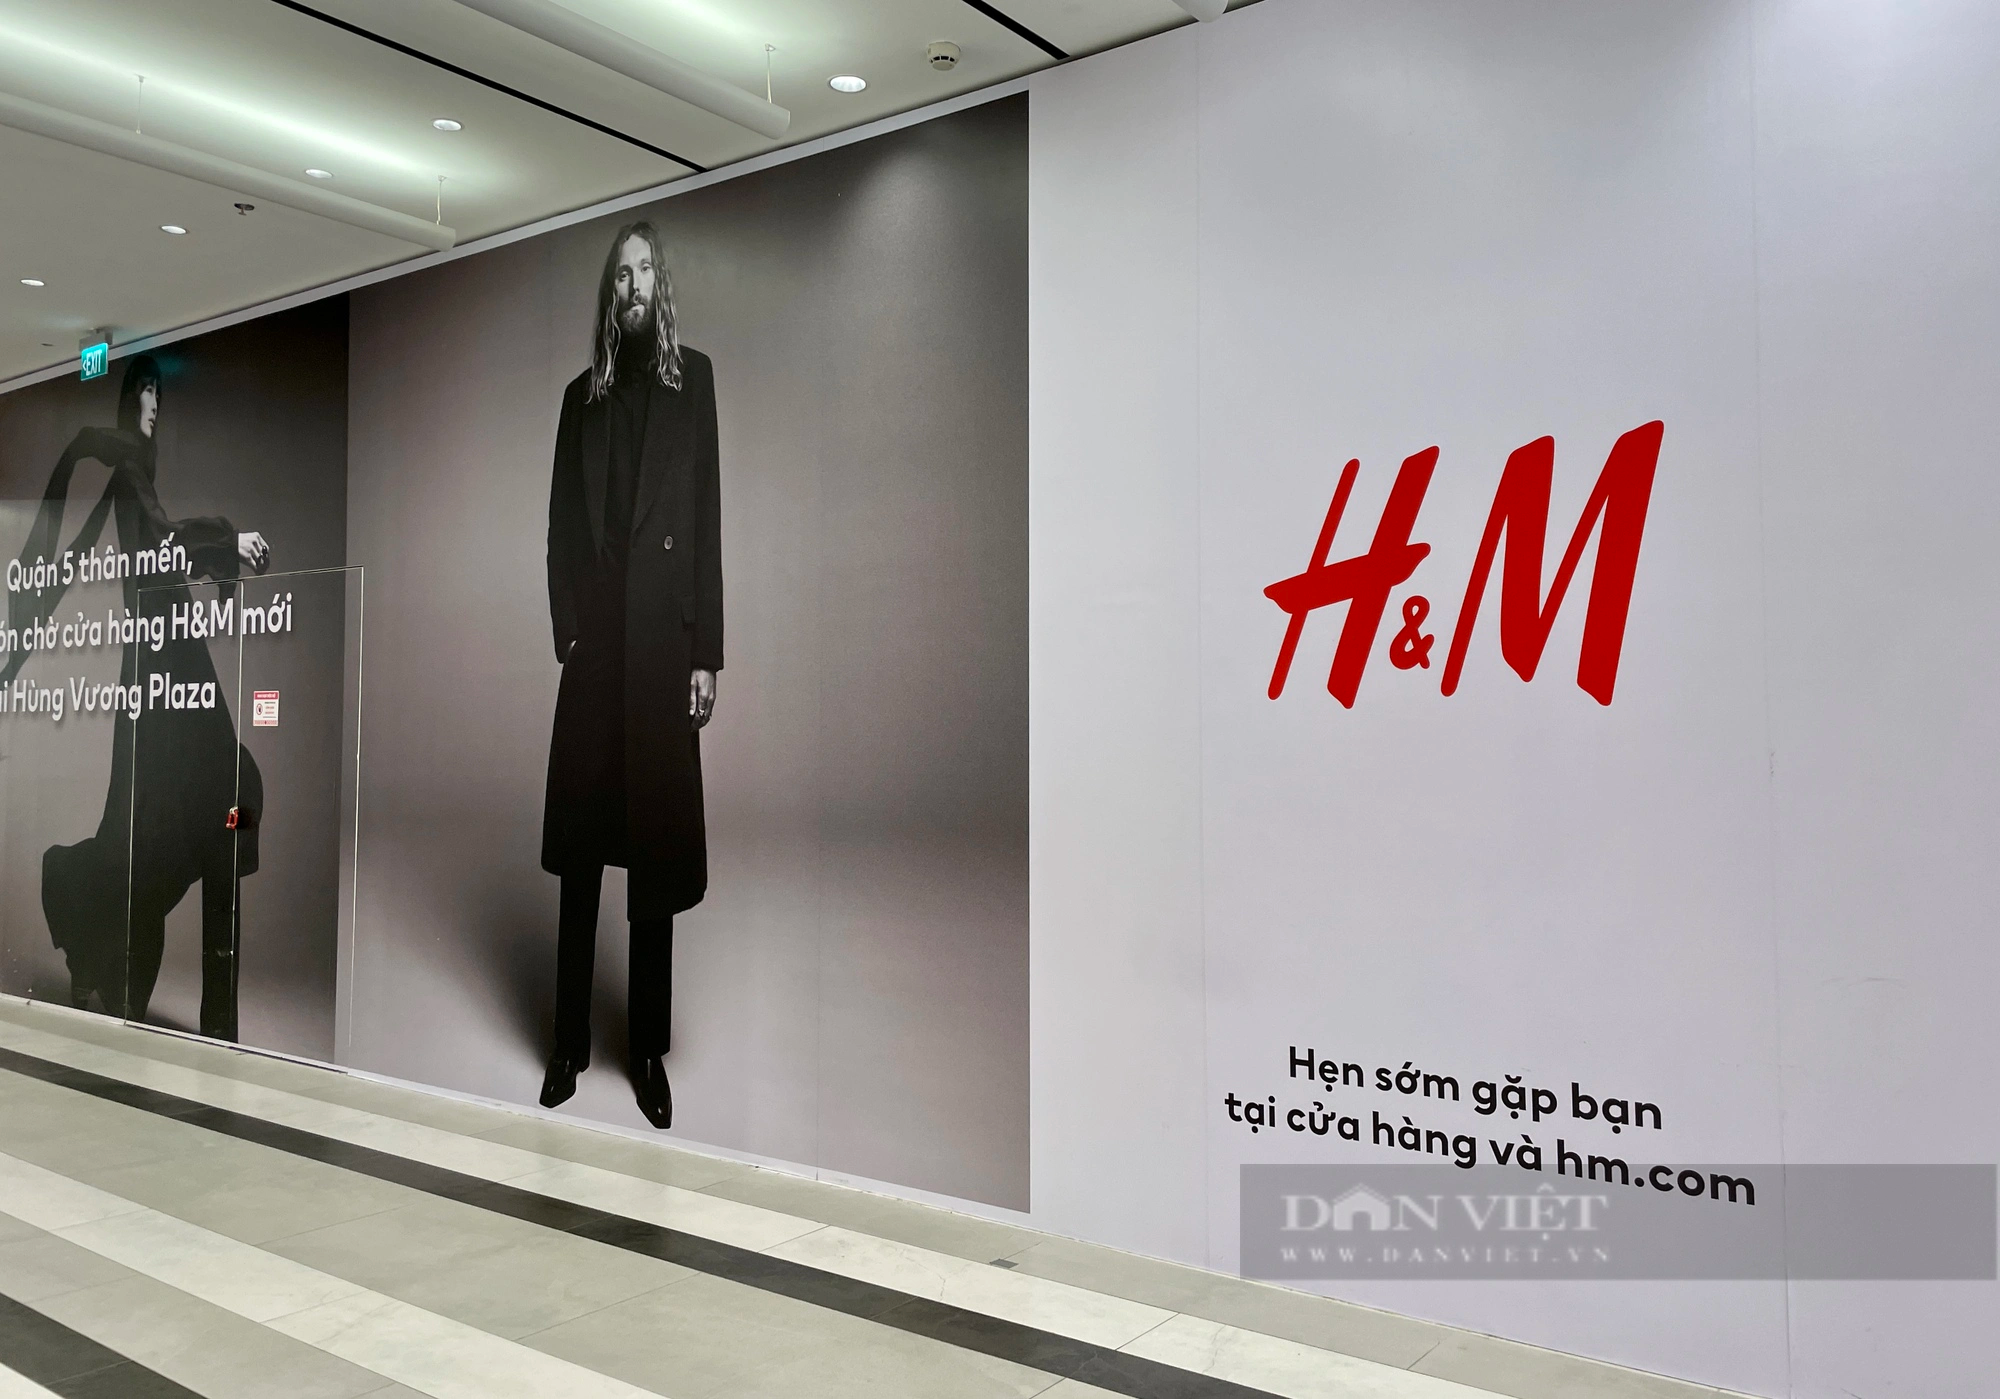 H&M - AEONMall Hà Đông